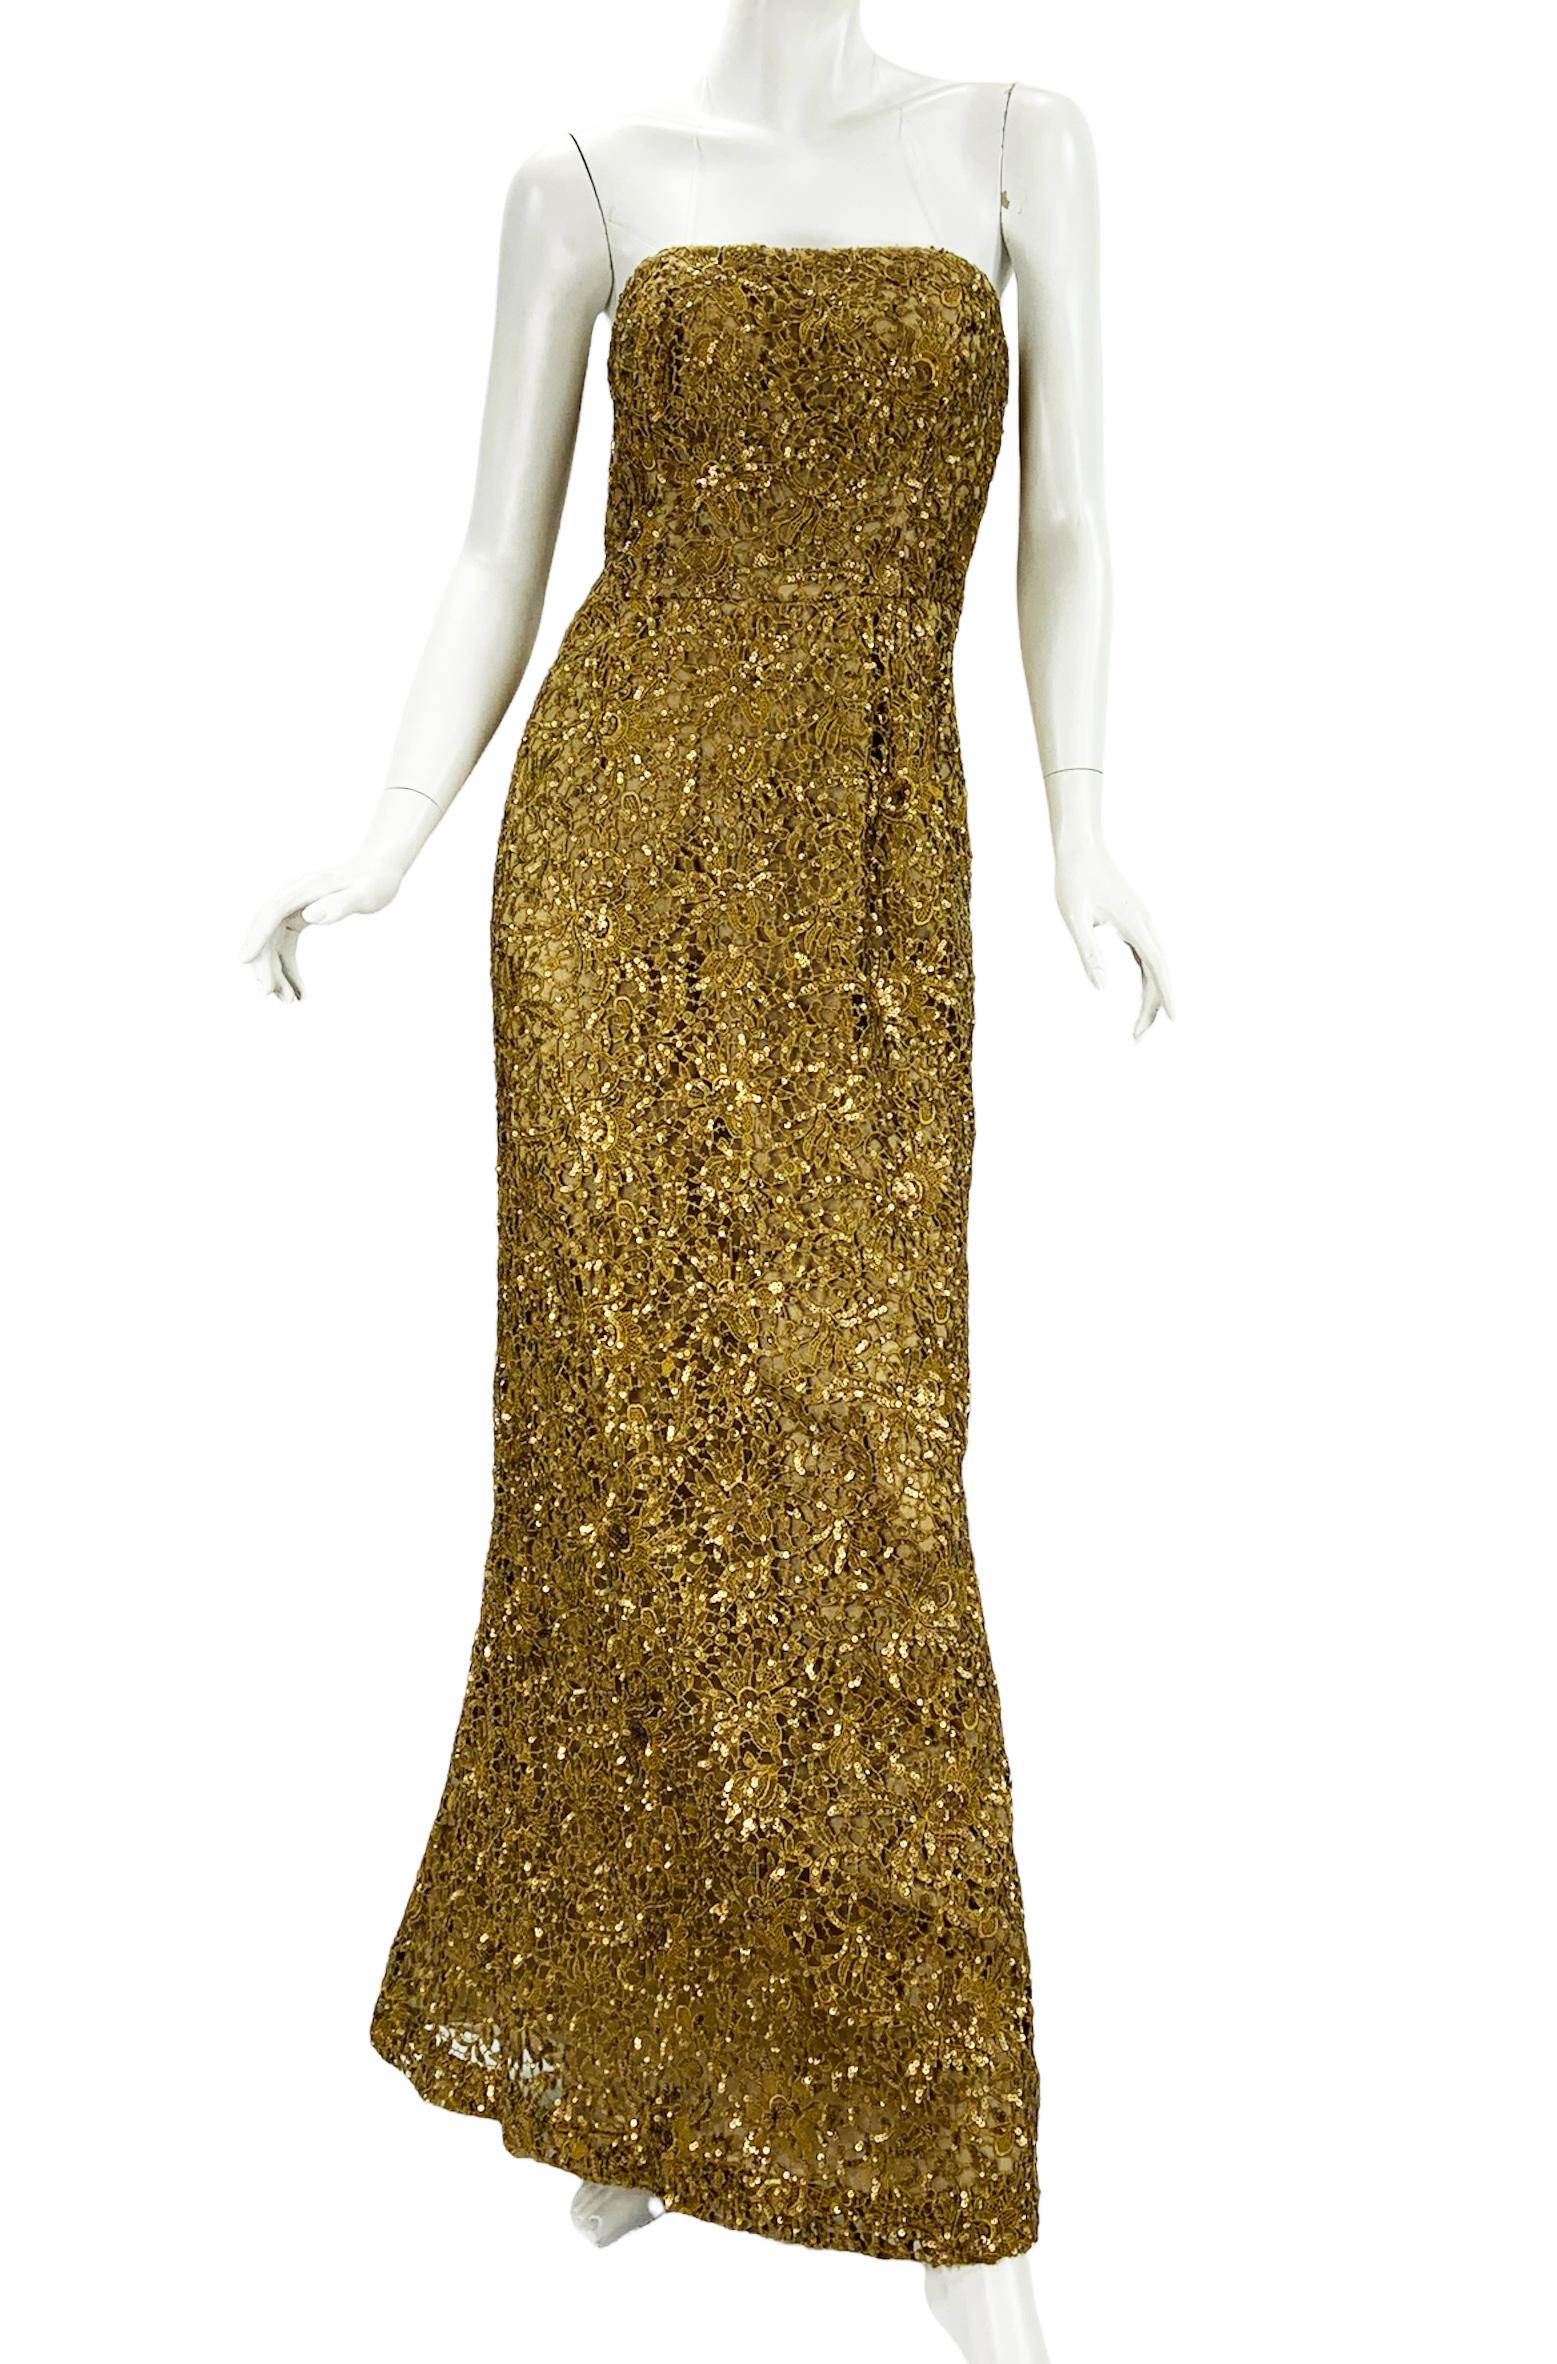 Oscar De La Renta PF 2012 Gold Lace Sequin Embellished Dress Gown + Jacket  For Sale 2